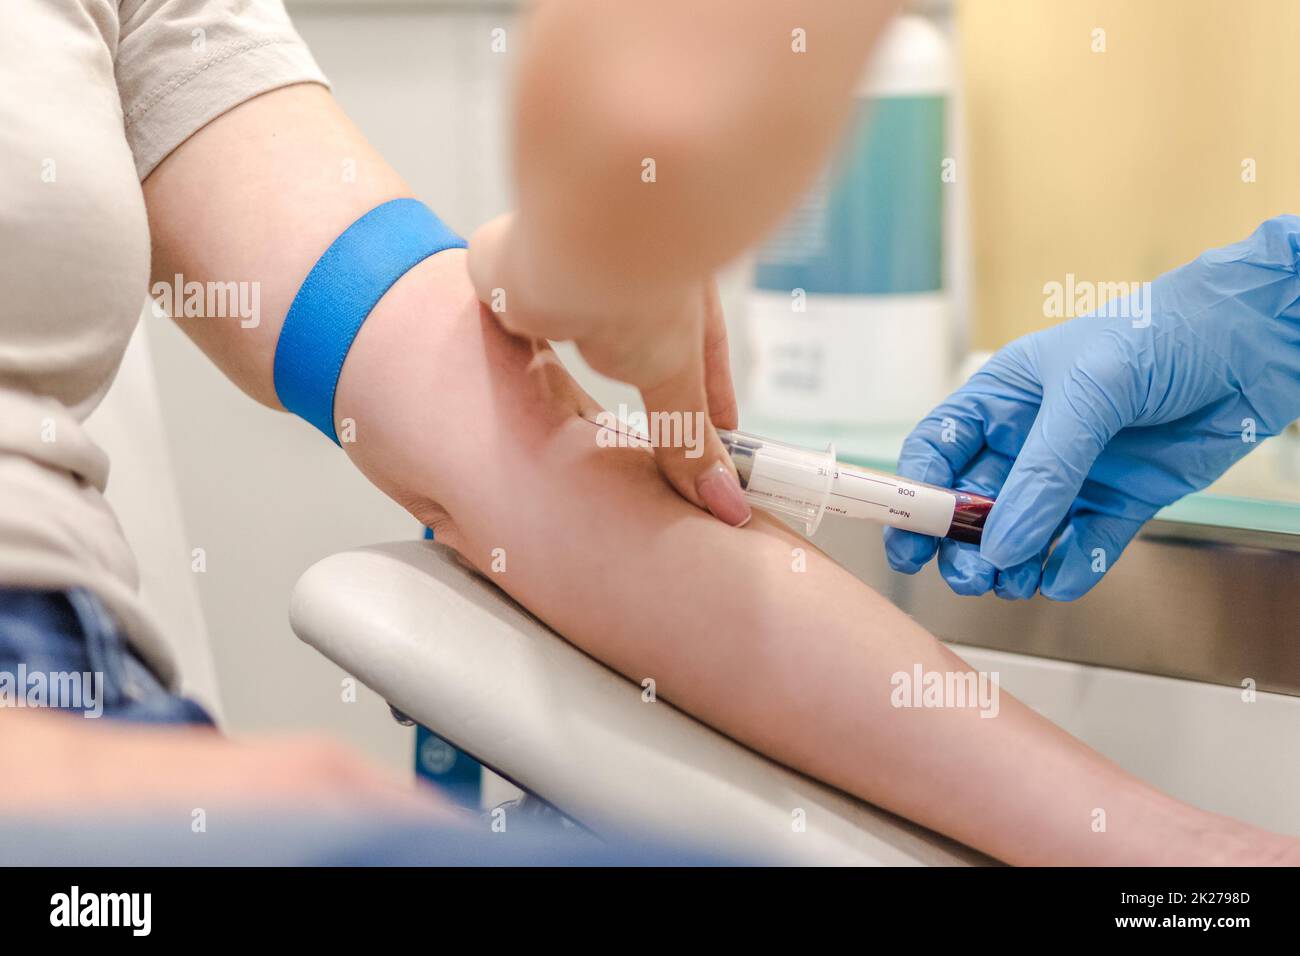 Primo piano del medico prelievo del campione di sangue dal braccio del paziente in ospedale per i test medici. Foto Stock